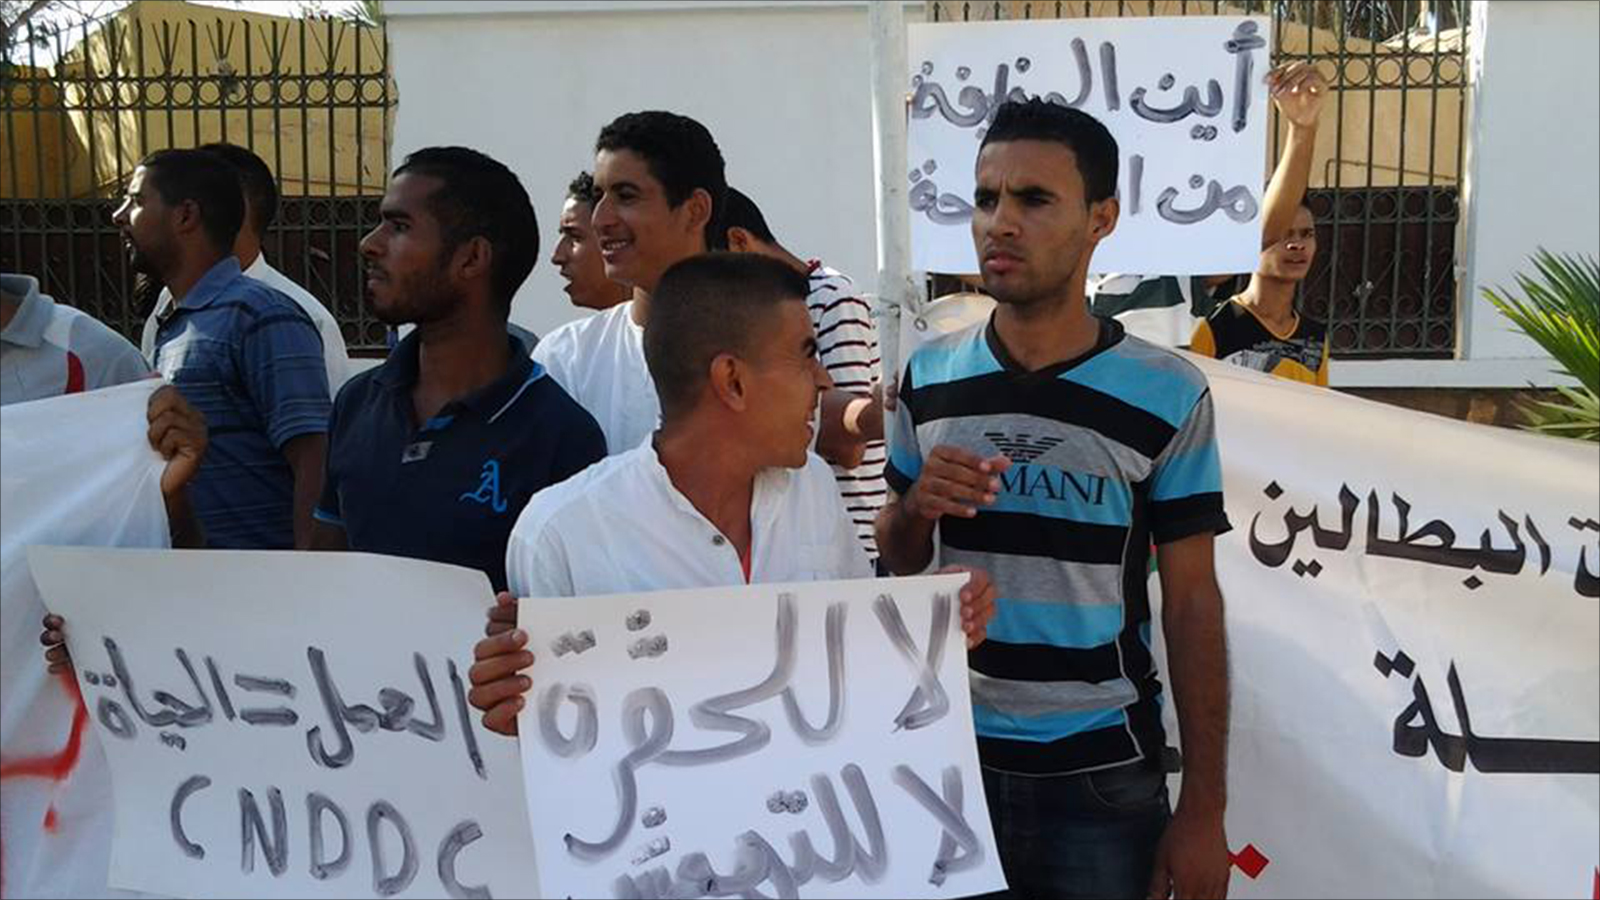 ‪احتجاج لشبان جزائريين مطالبين بالتوظيف في وقت تحتاج فيه الفلاحة لليد العاملة‬ (الجزيرة)